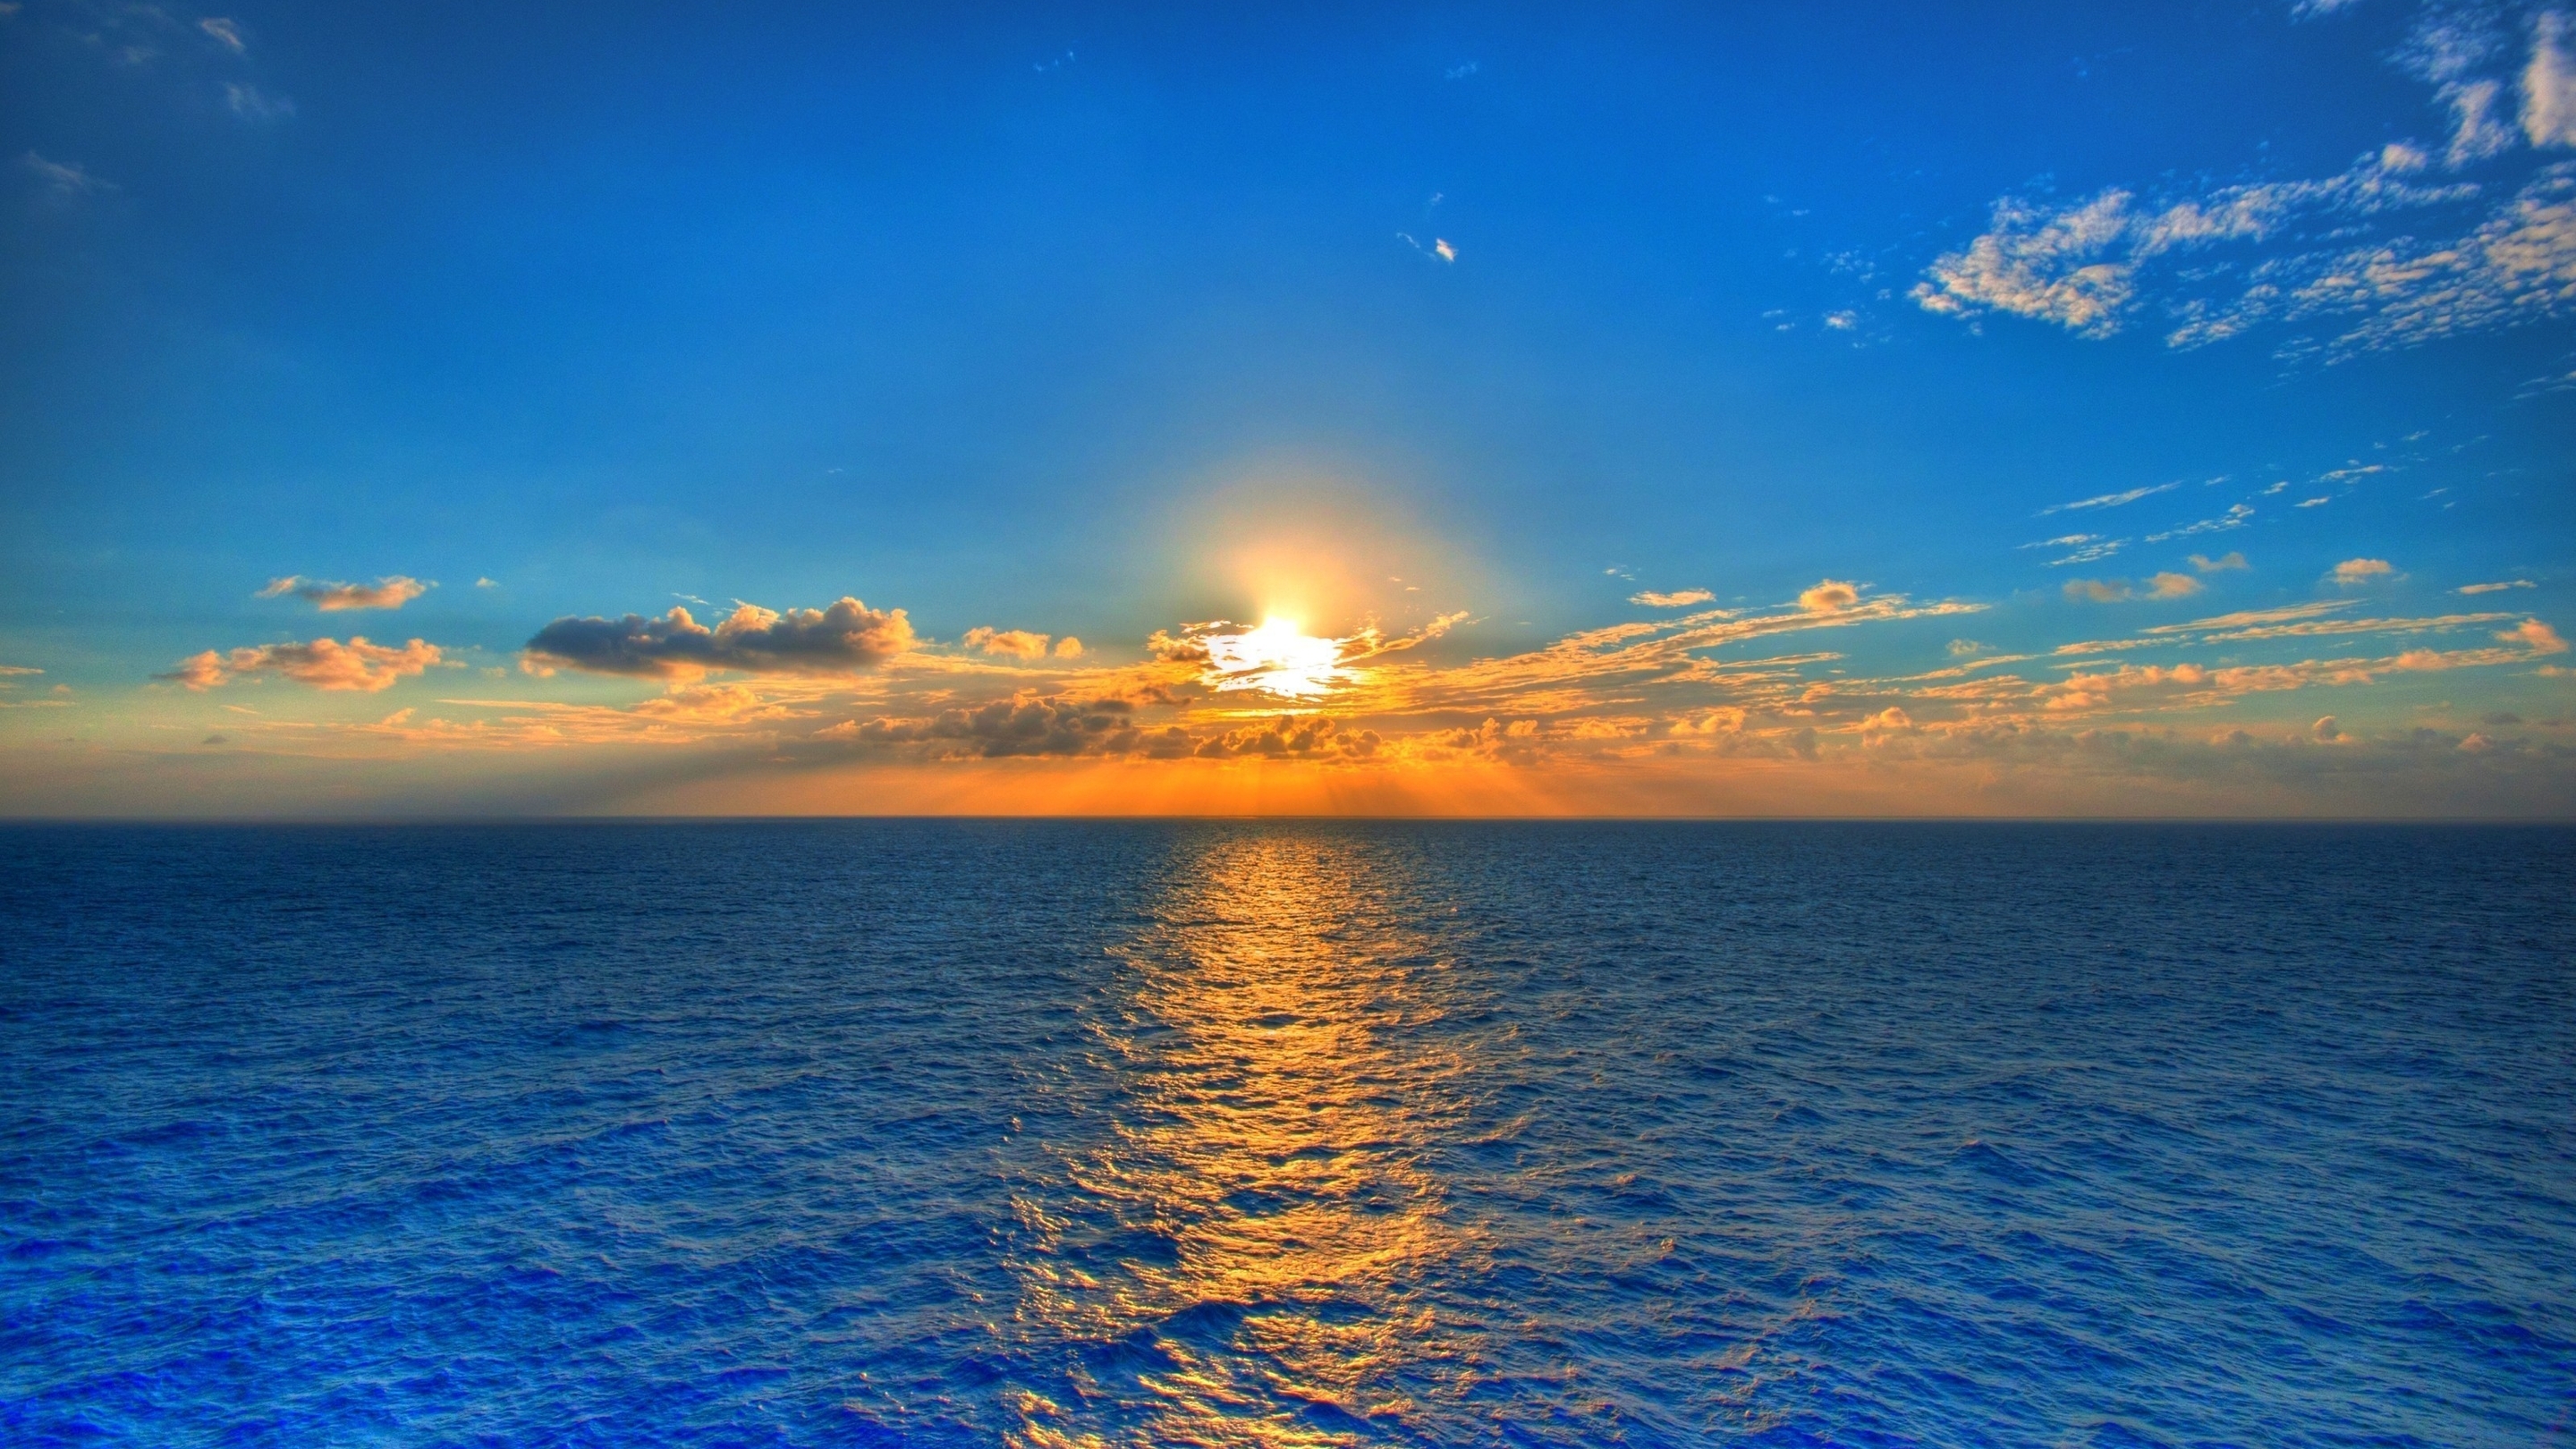 Картинка: Солнце, море, небо, облака